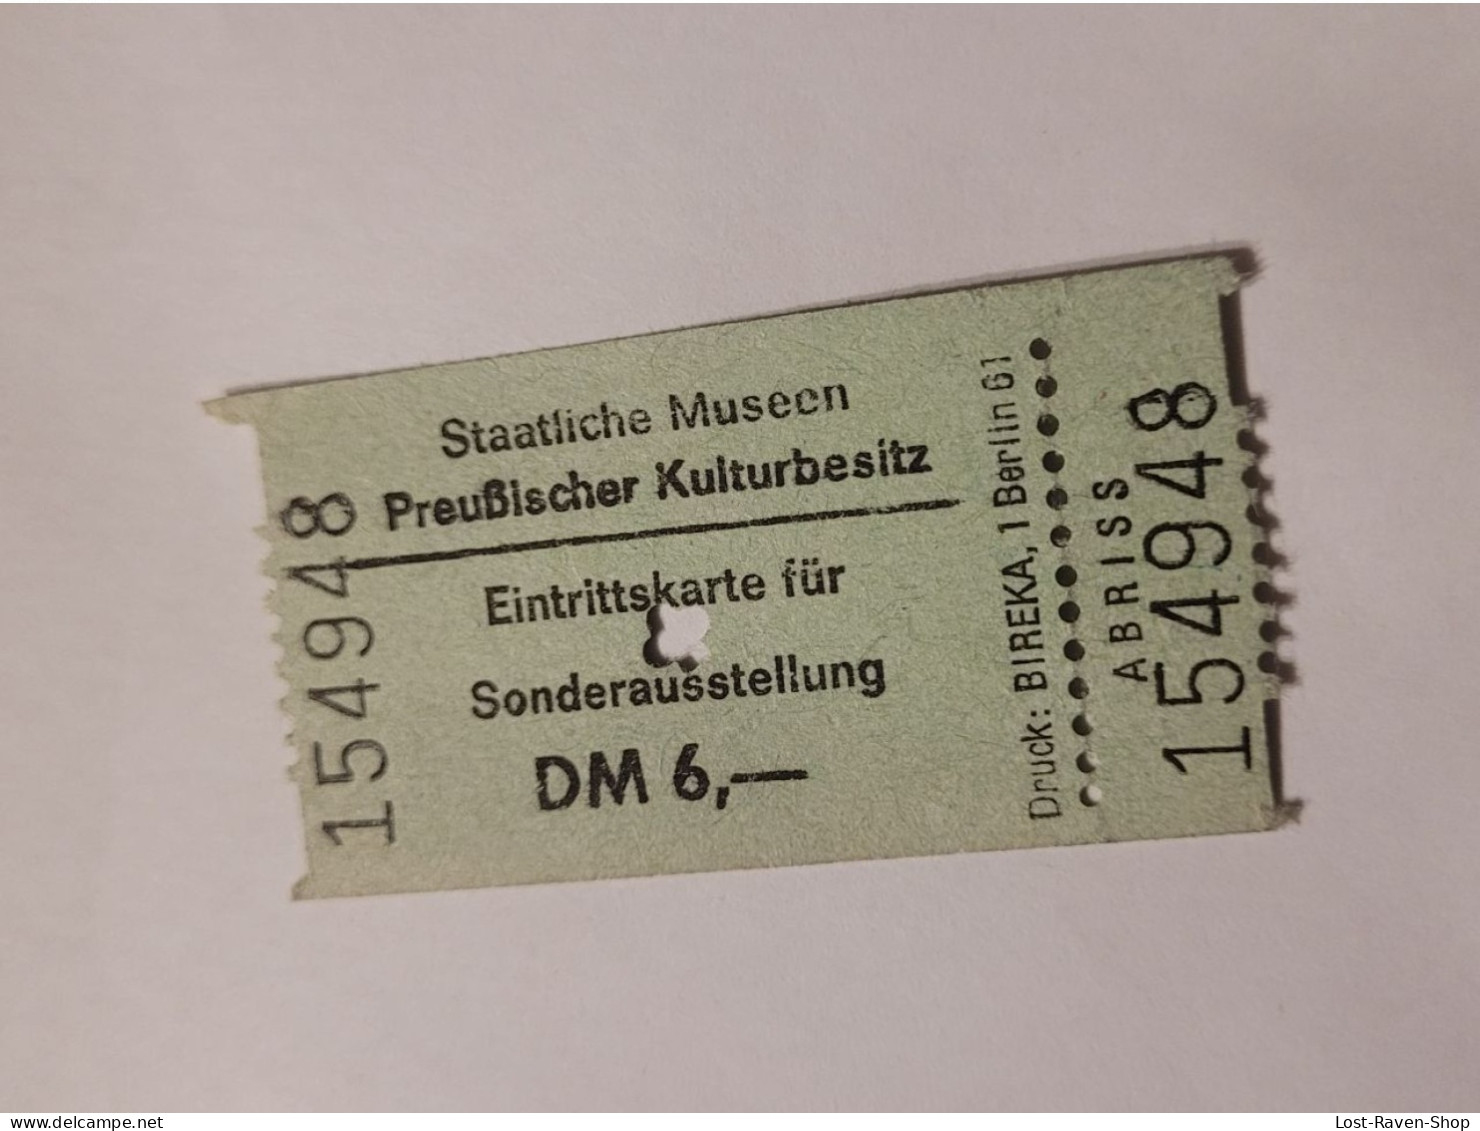 Eintrittskarte - Preußische Museen - Tickets - Vouchers